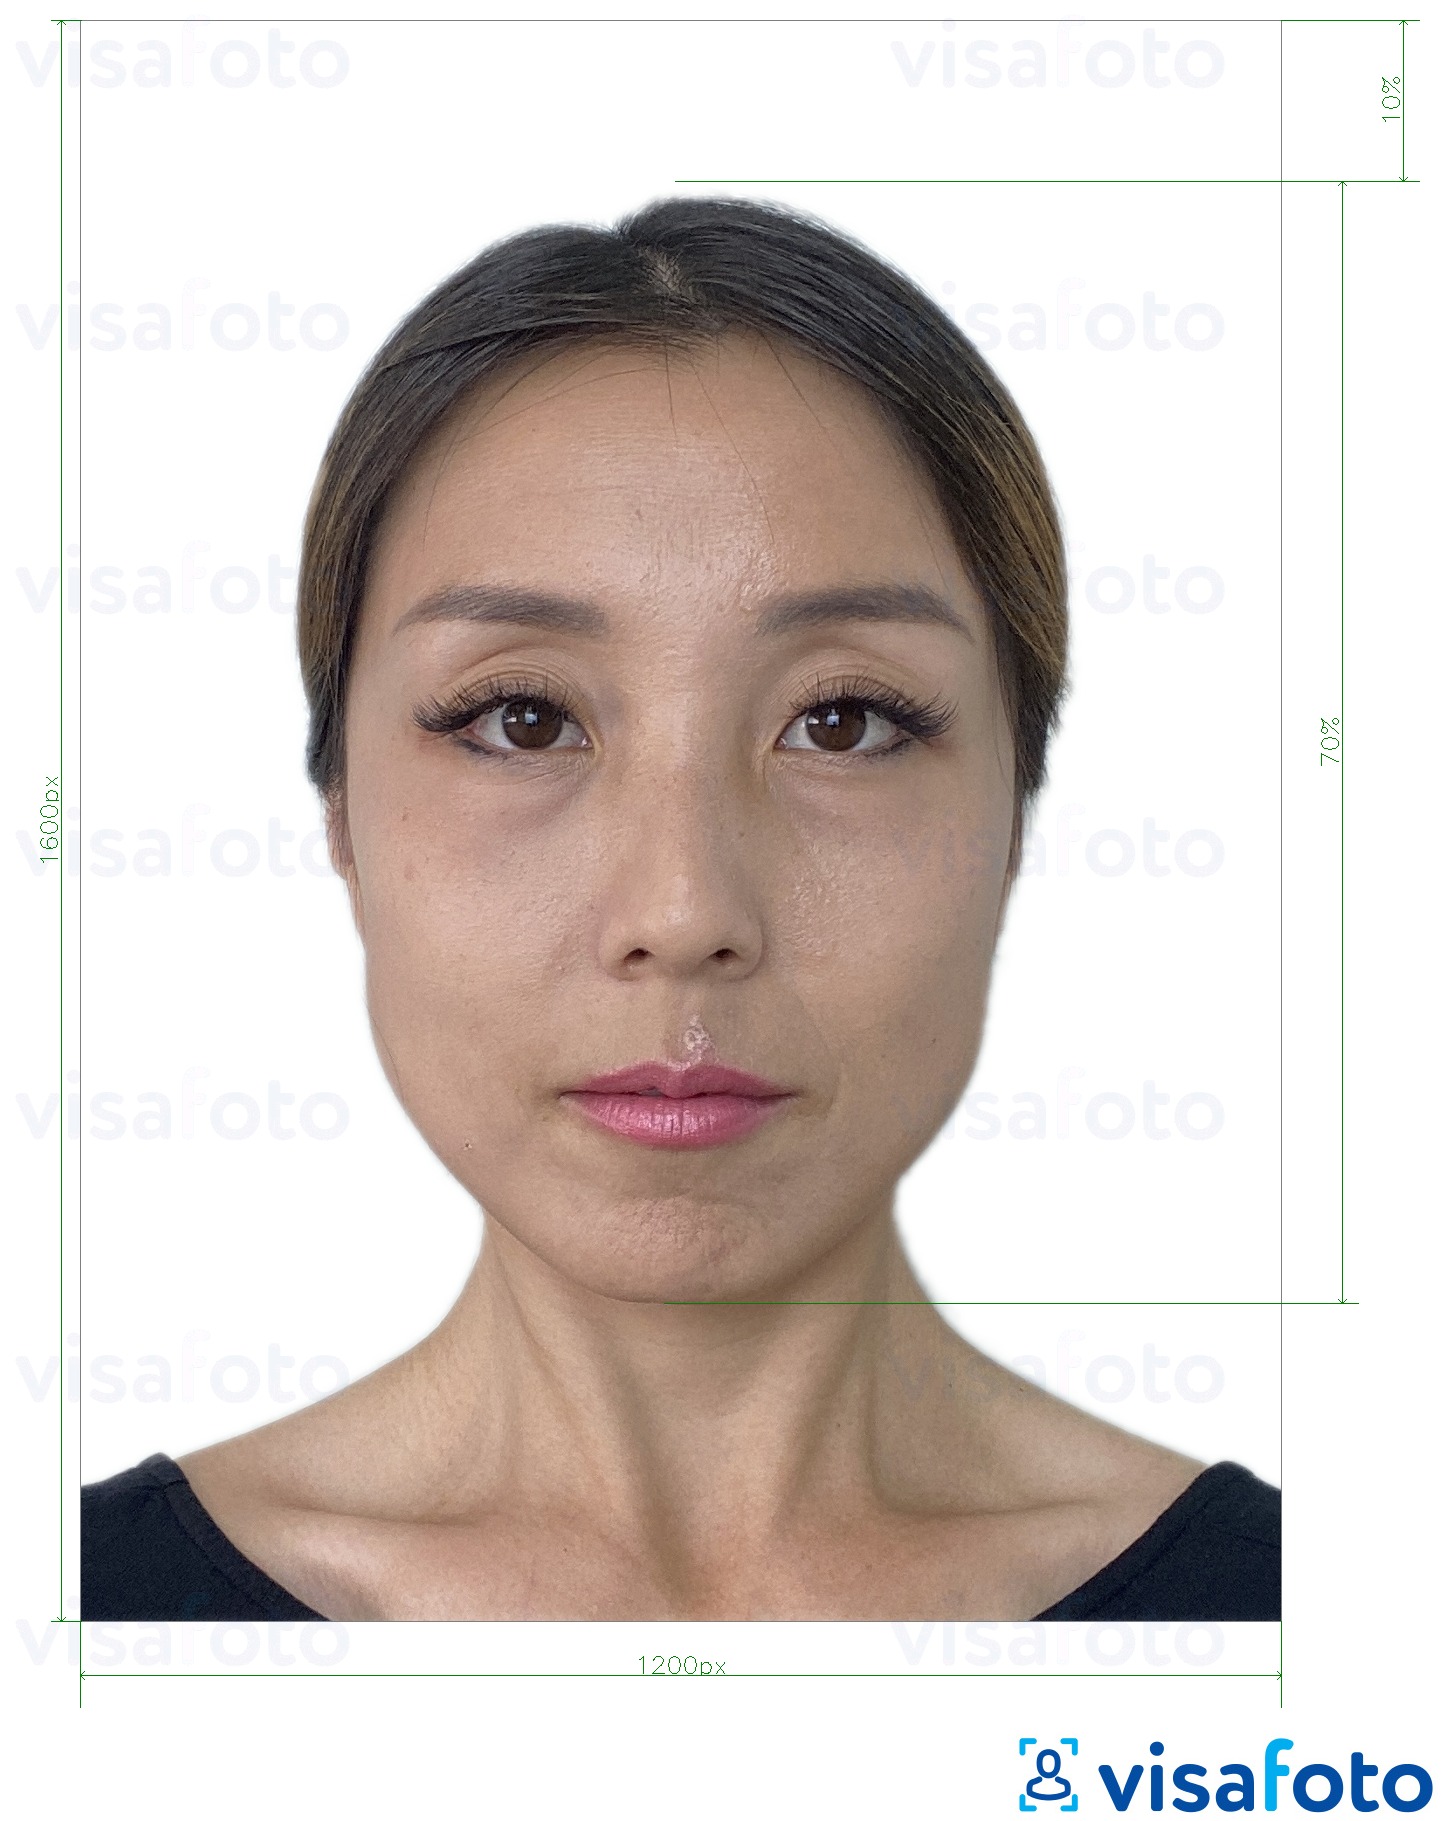 Hong Kong passport photo for online form